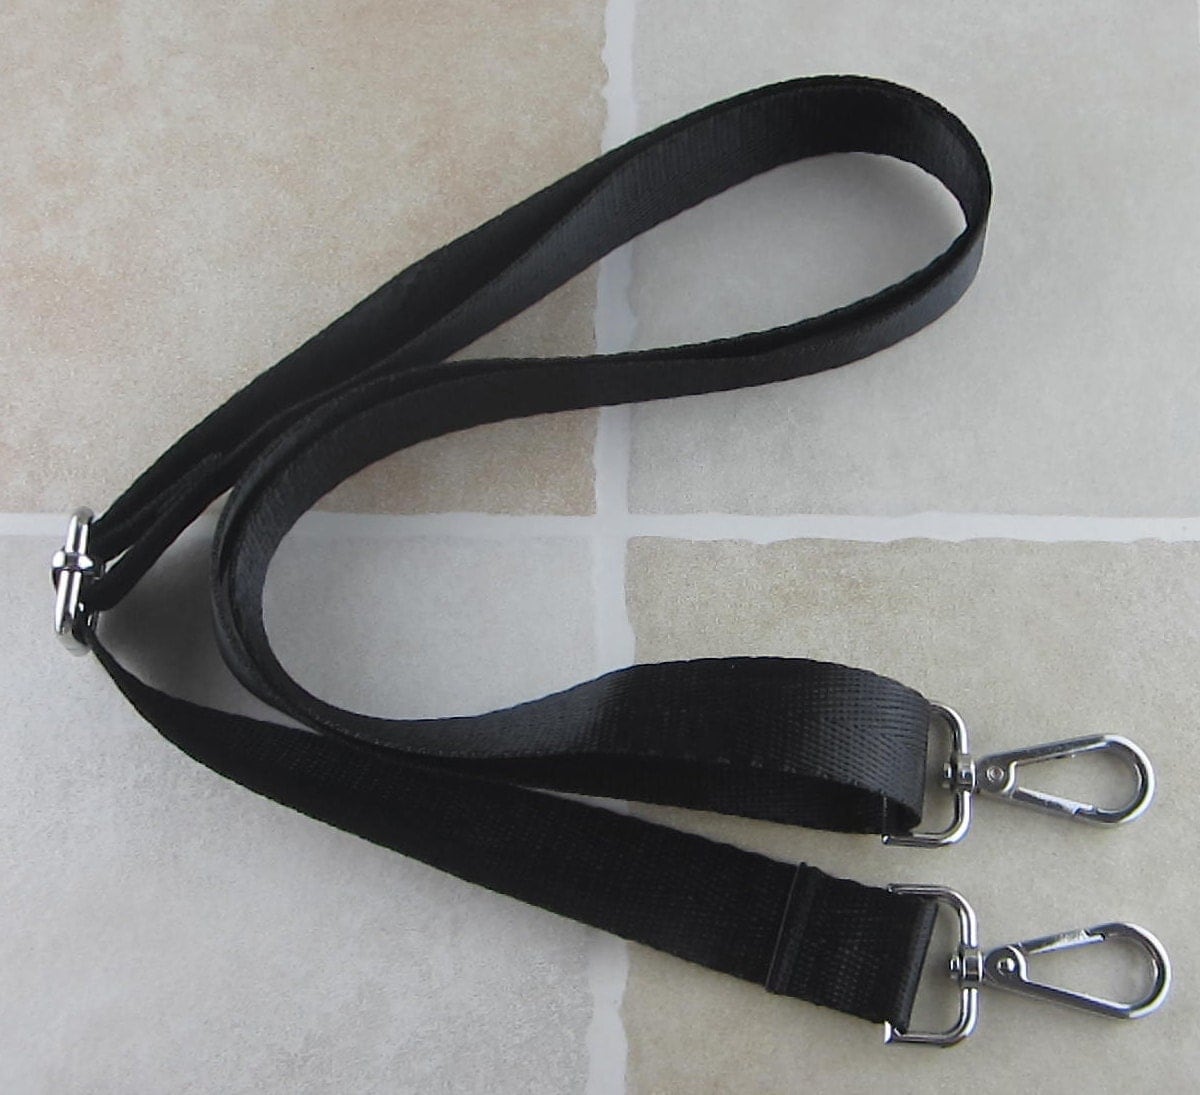 Black Nylon Strap for Bag 1 inch Wide Cross Body Strap